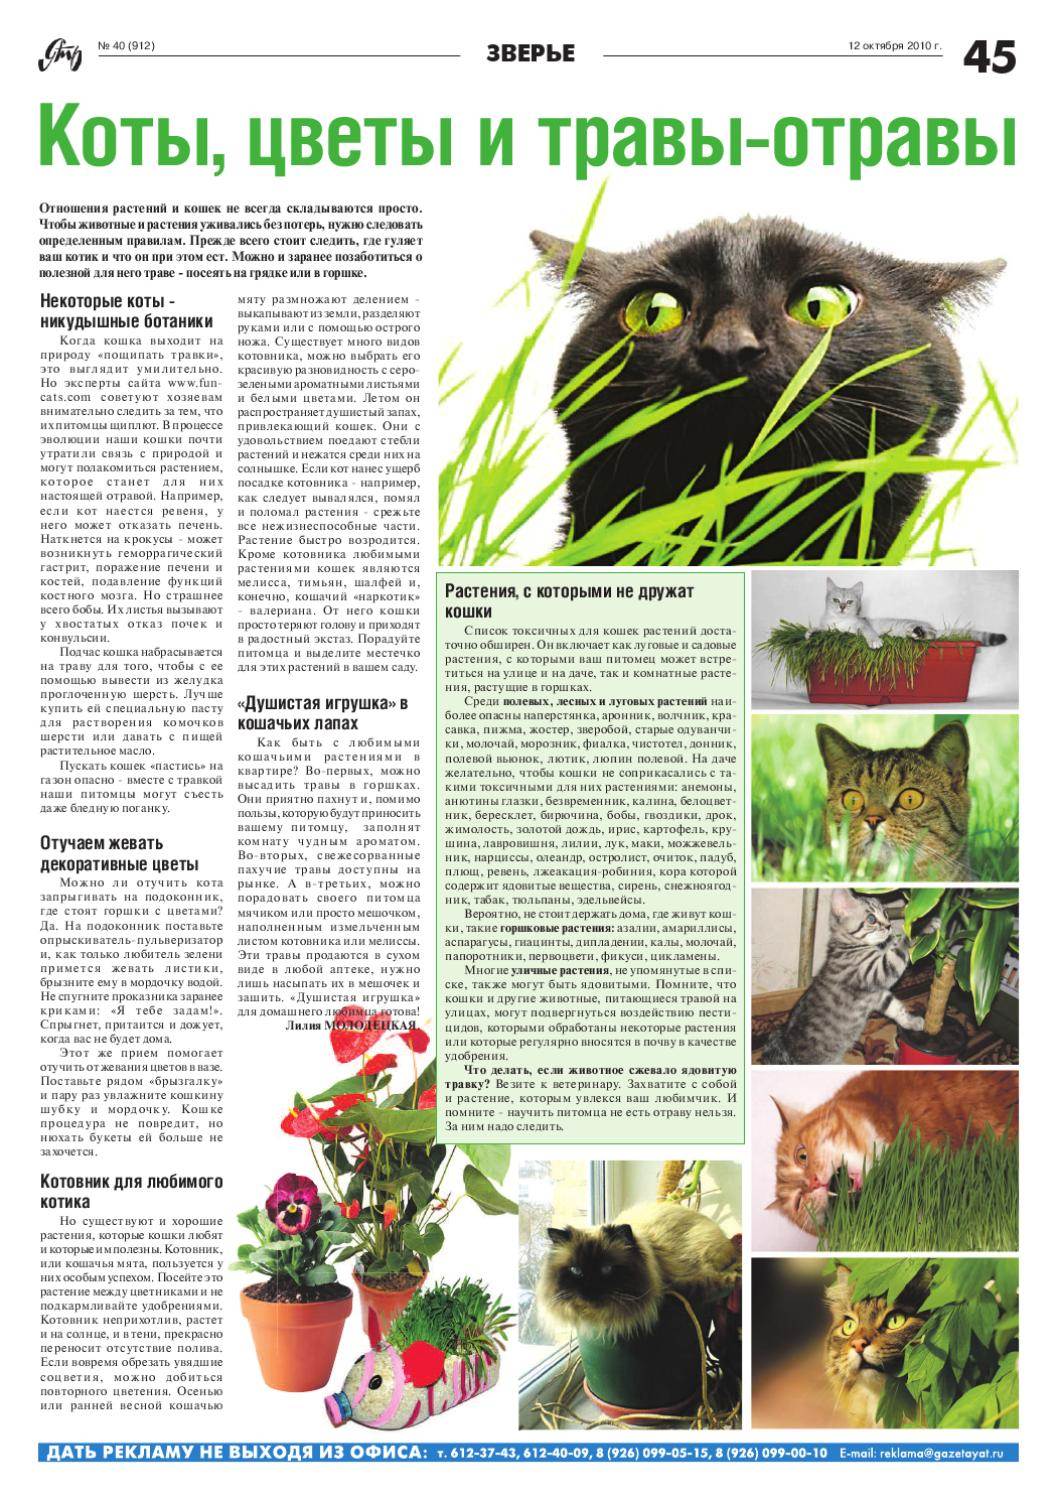 Список и описание ядовитых растений для котов: какие цветы опасны